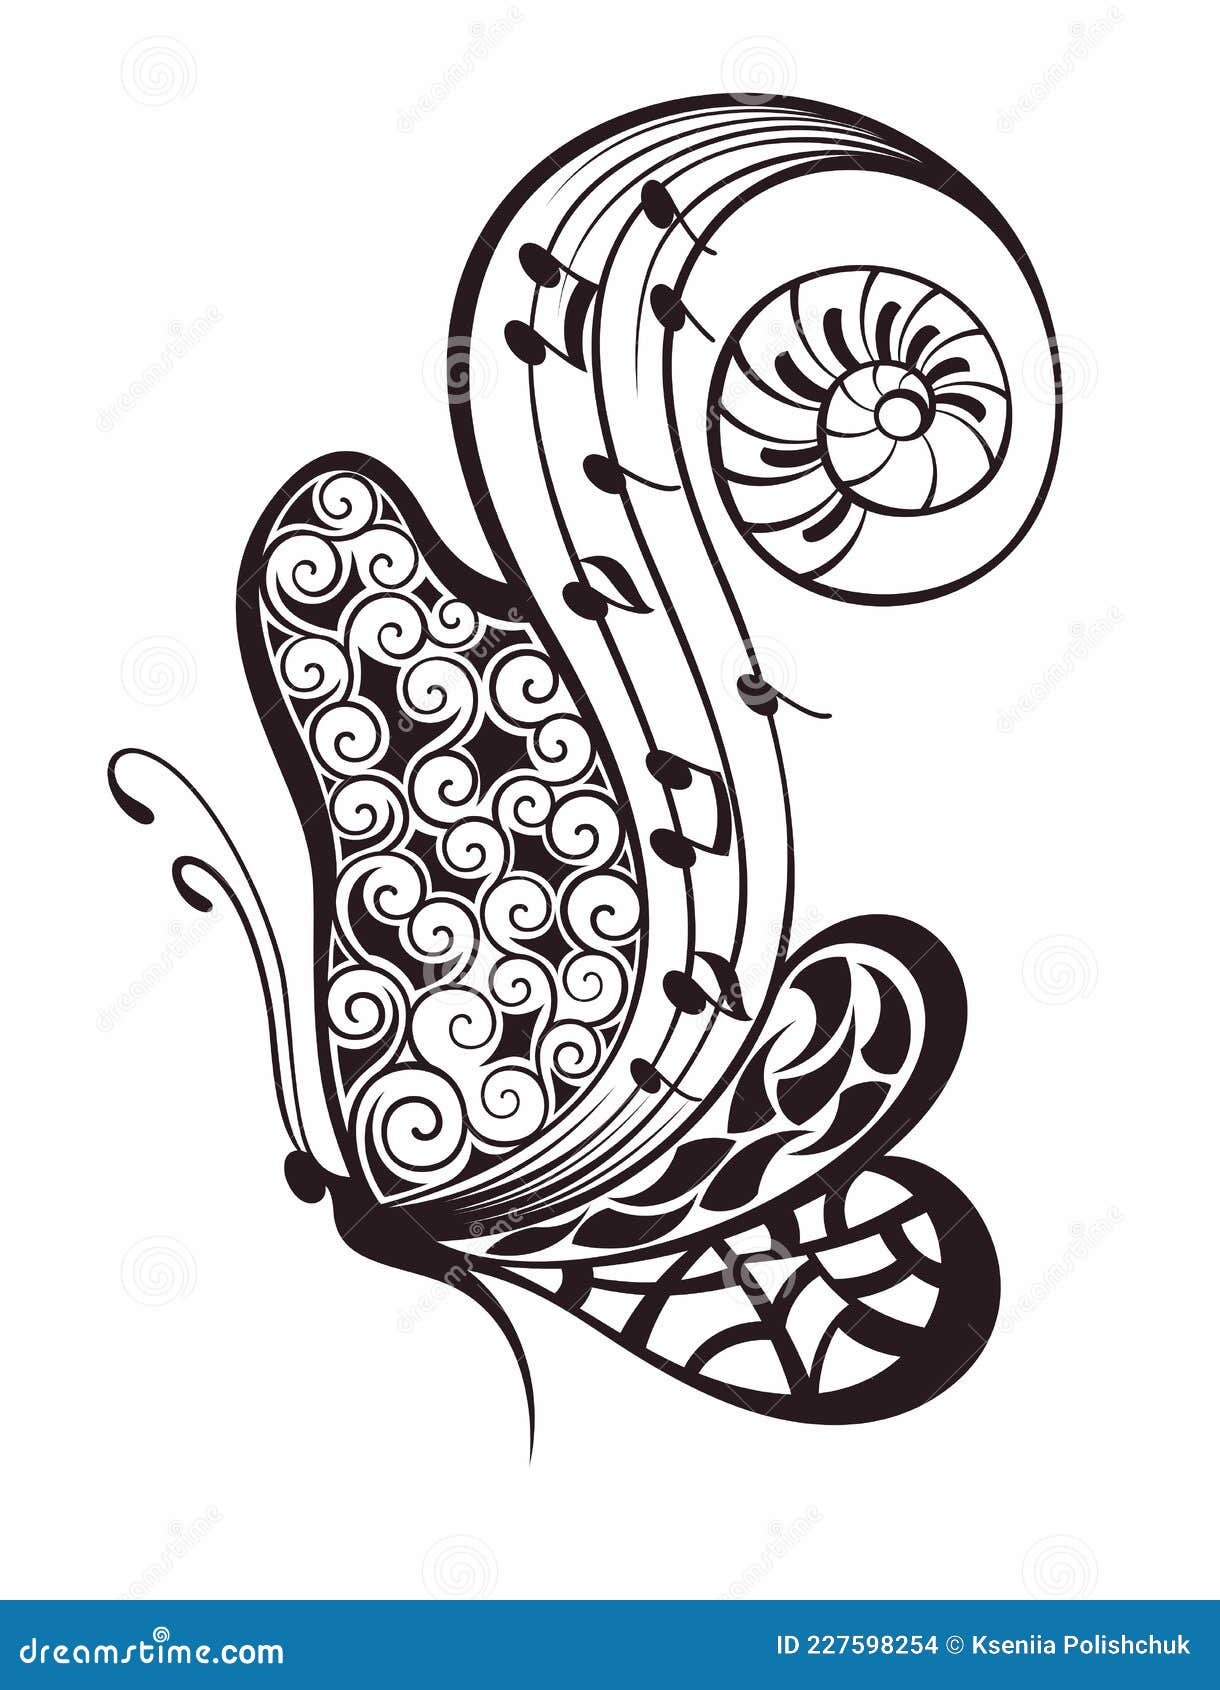 Tattoo of Musical notes Butterflies Music